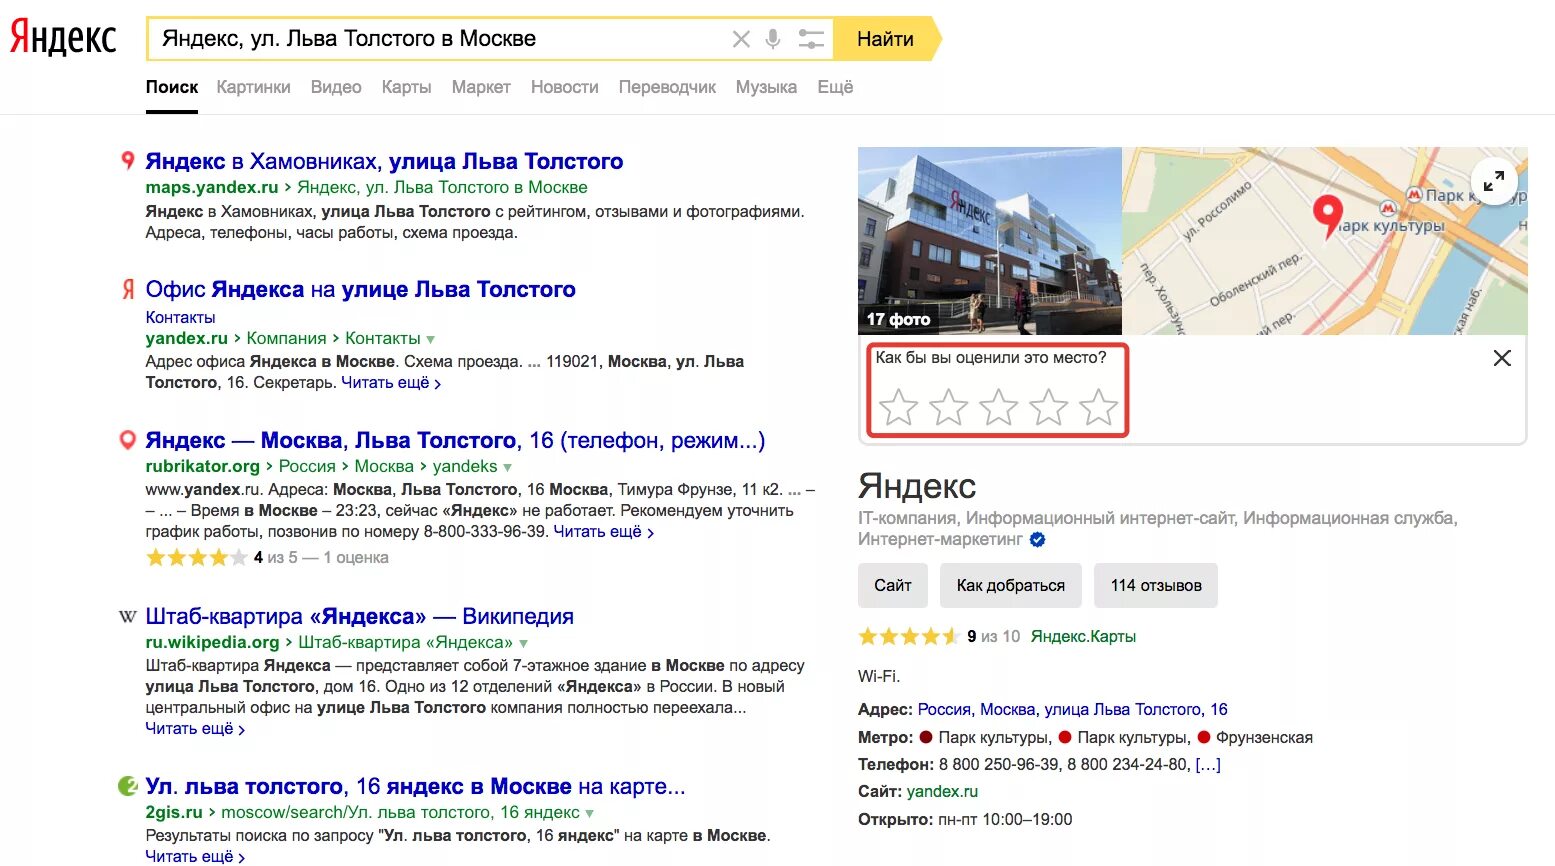 Сайт russia org. Рейтинг организации в Яндексе.